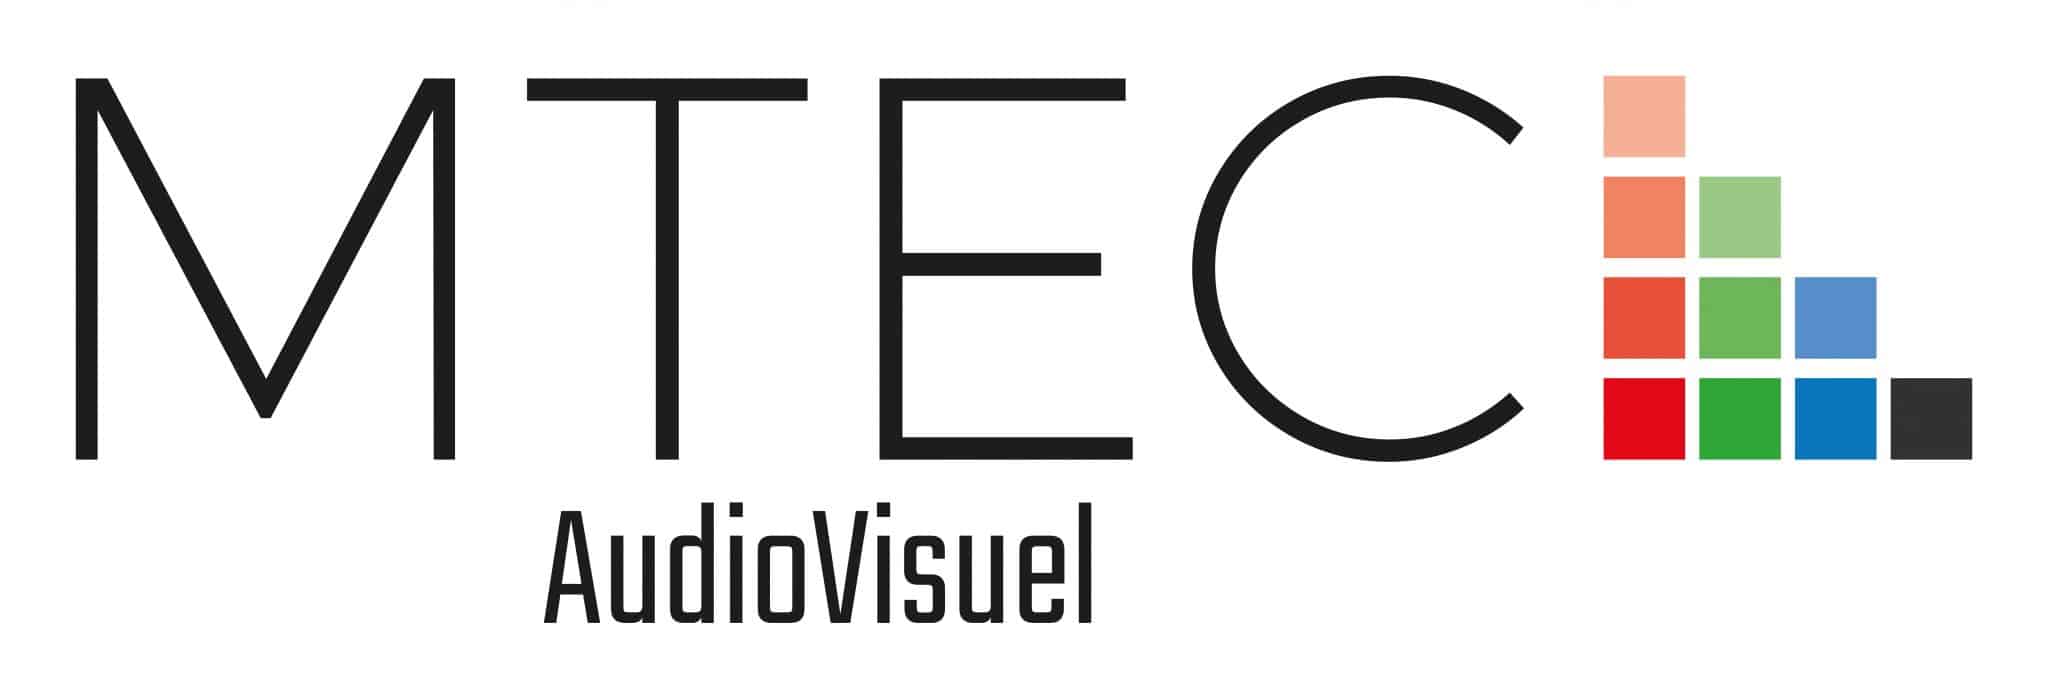 logo MTEC Audiovisuel 